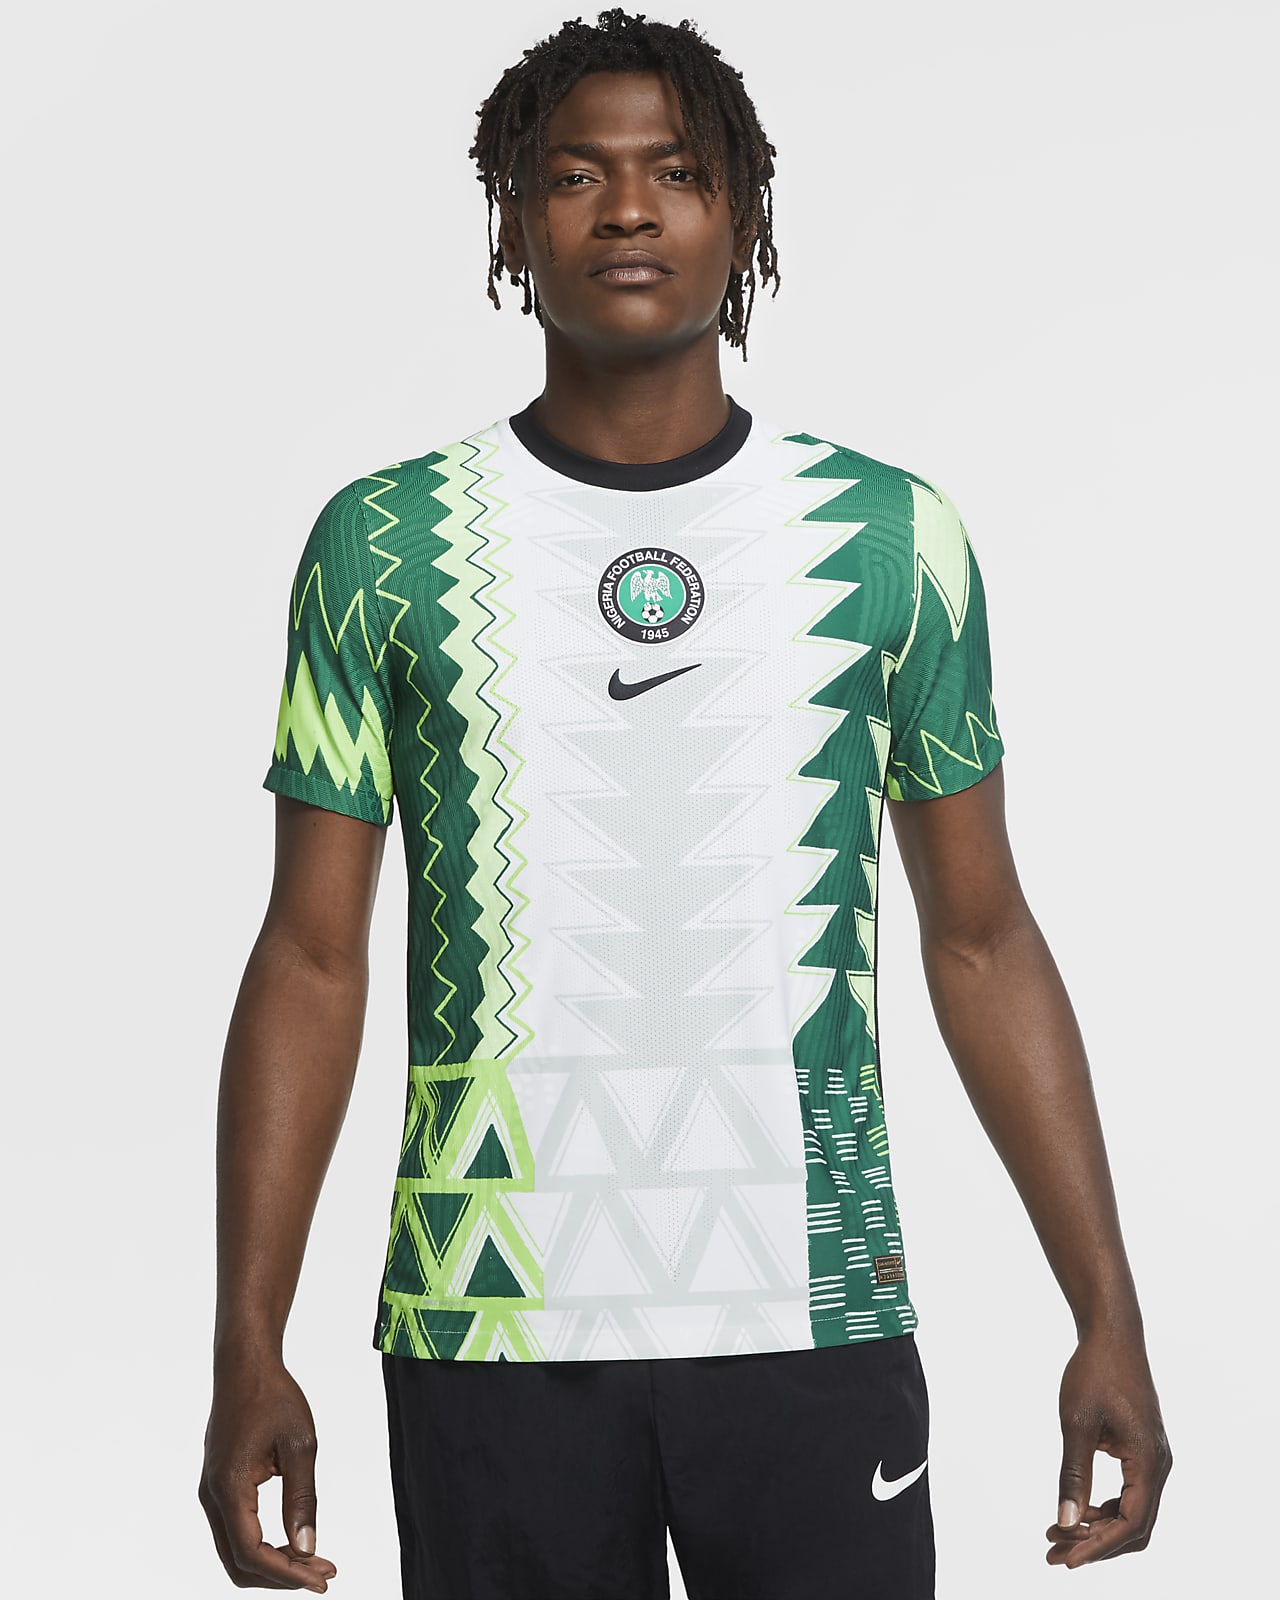 Aantrekkingskracht Voel me slecht Afsnijden Nigeria : les nouveaux maillots des Super Eagles dévoilés !